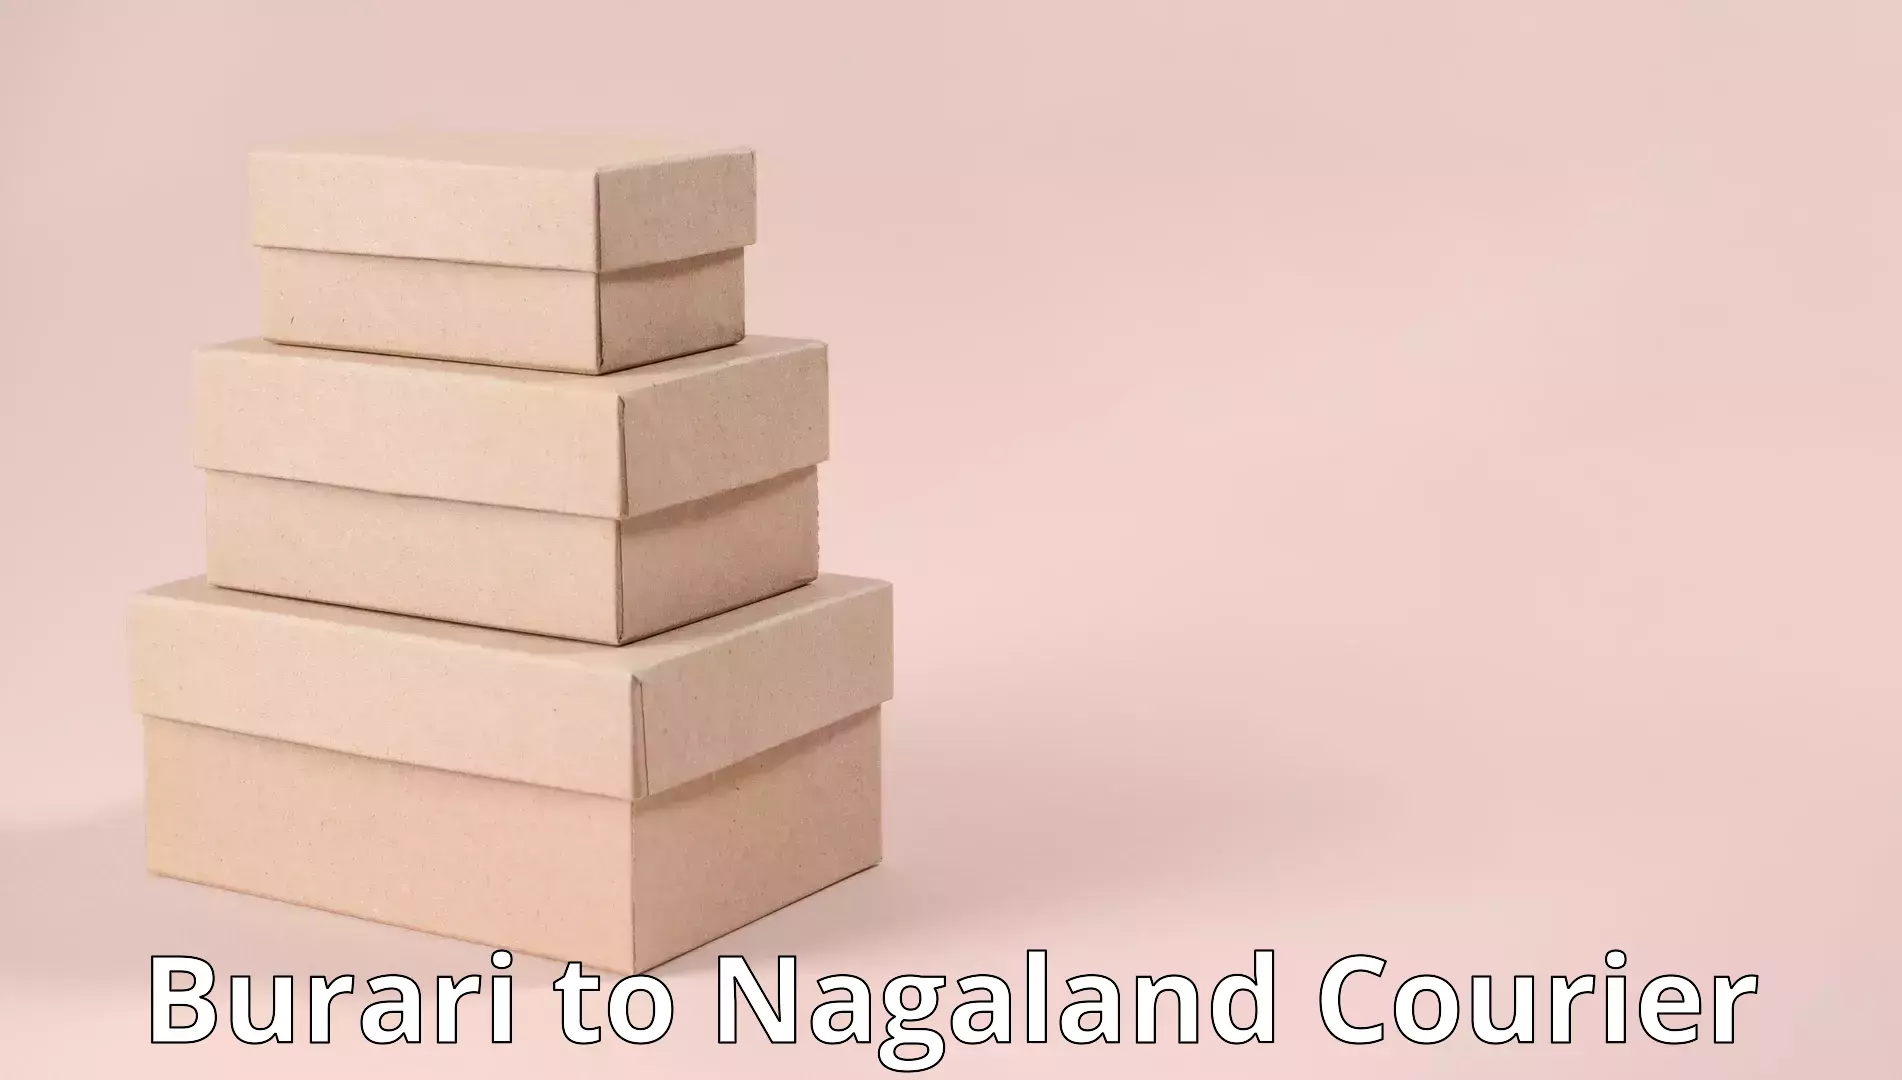 Moving and packing experts Burari to Nagaland